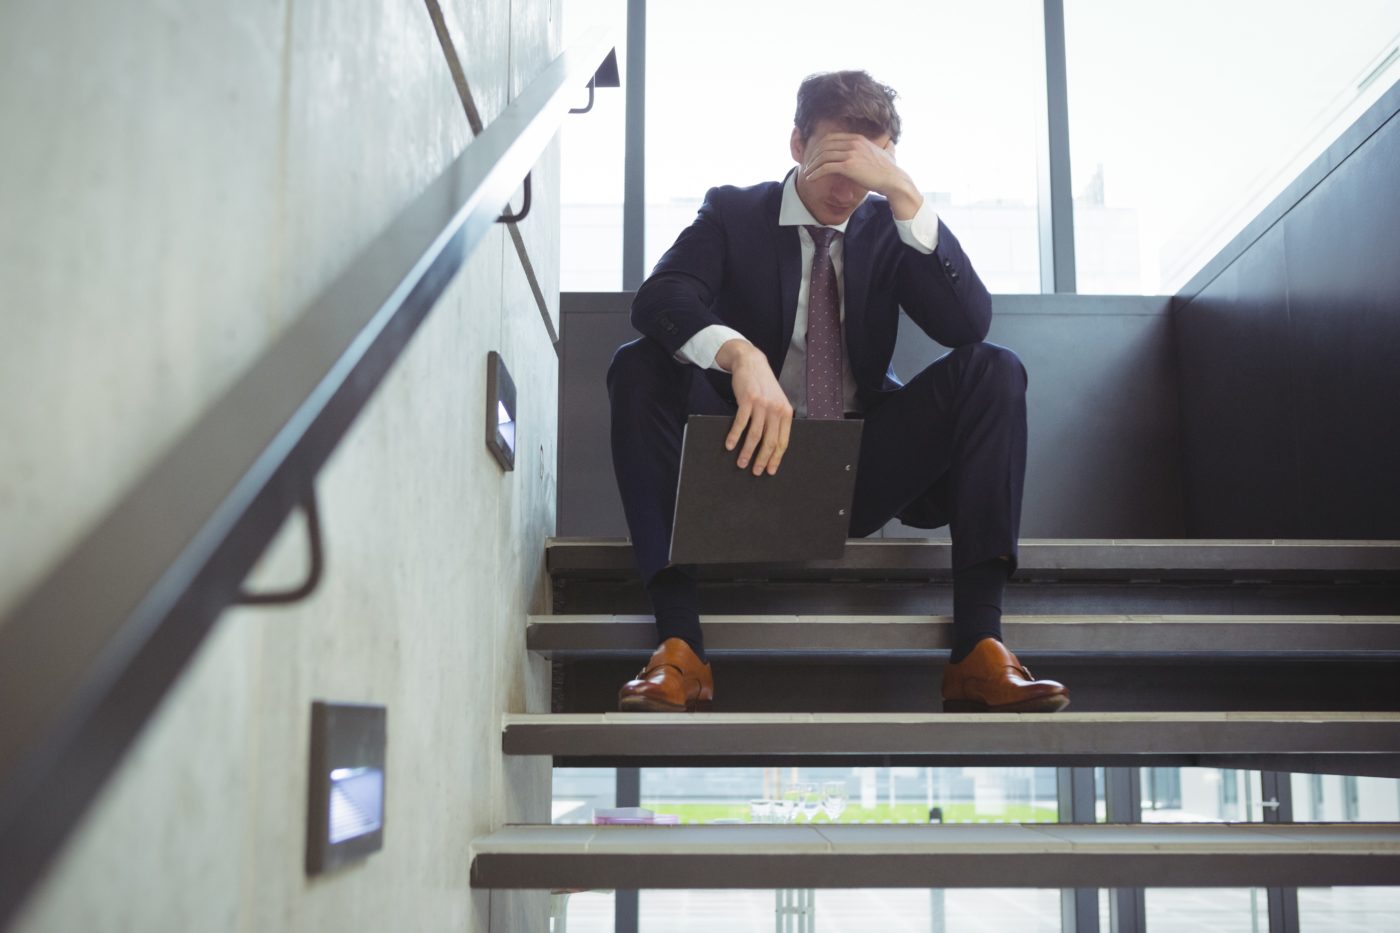 przedsiębiorca, siedzący na schodach zastanawia się o jakich obowiązkach prawnych zapominają przedsiębiorcy?